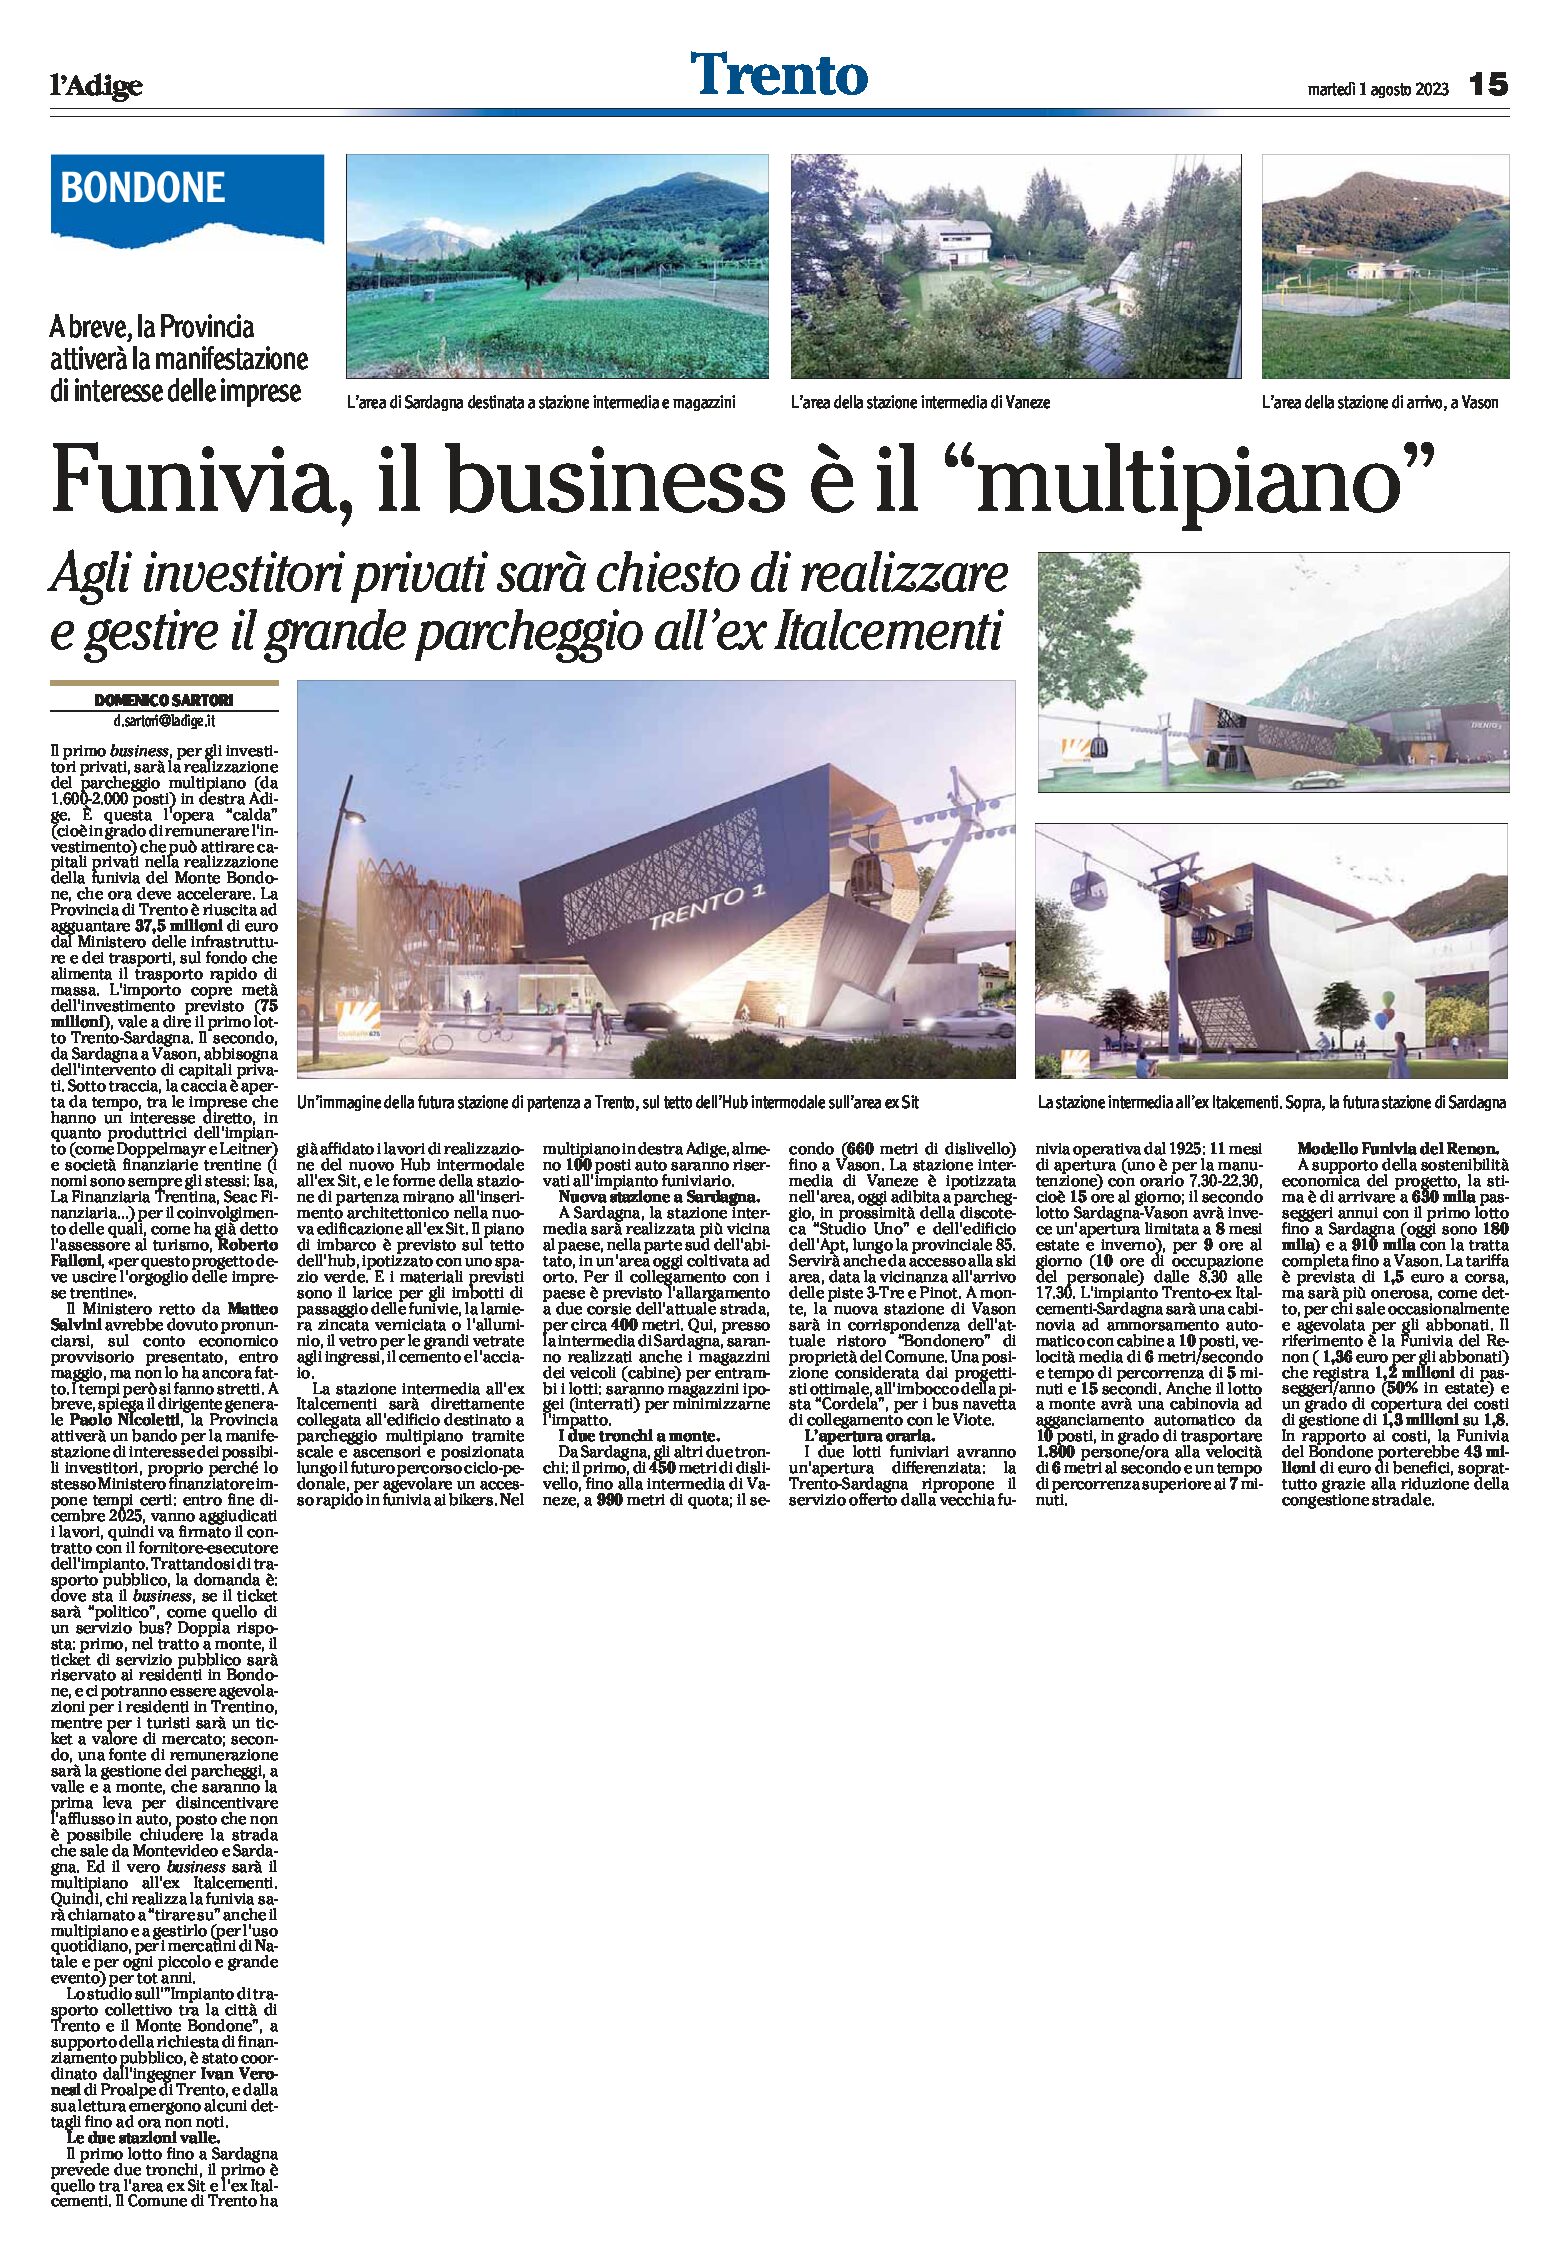 Trento-Bondone: funivia, il business è il parcheggio